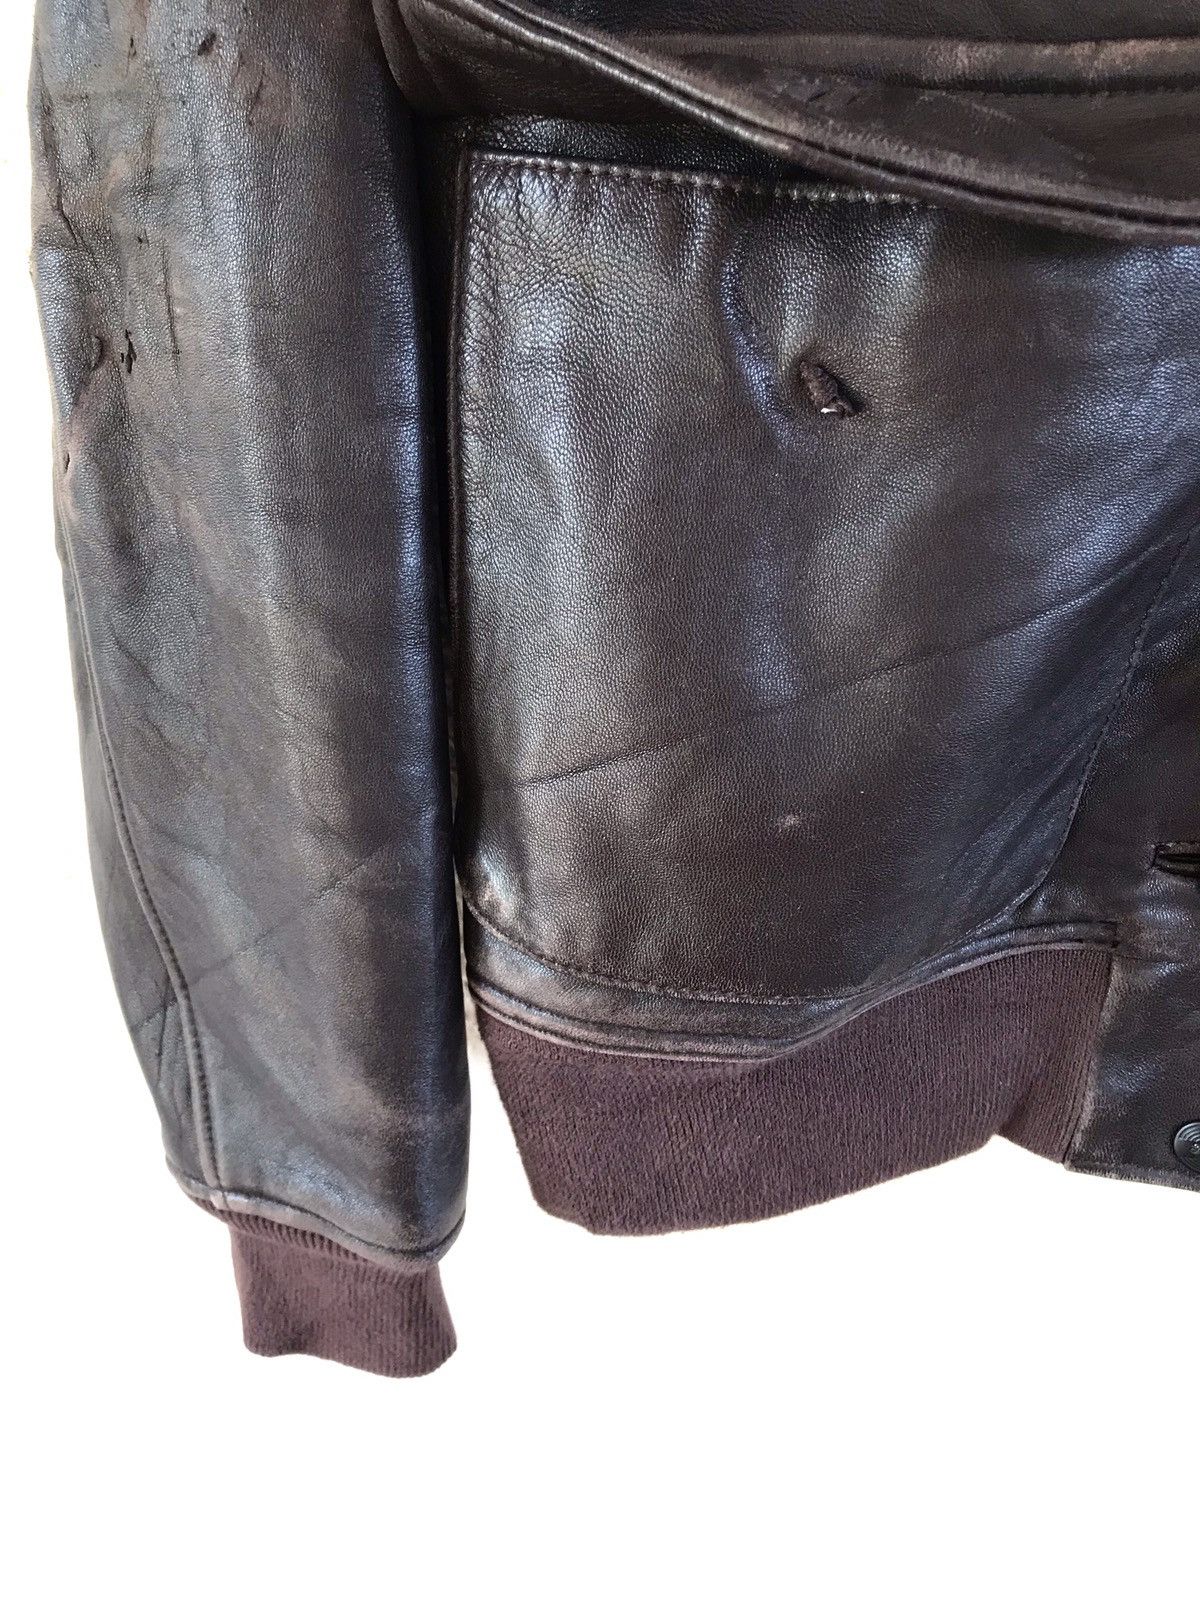 Neighborhood Leather Jacket - 9